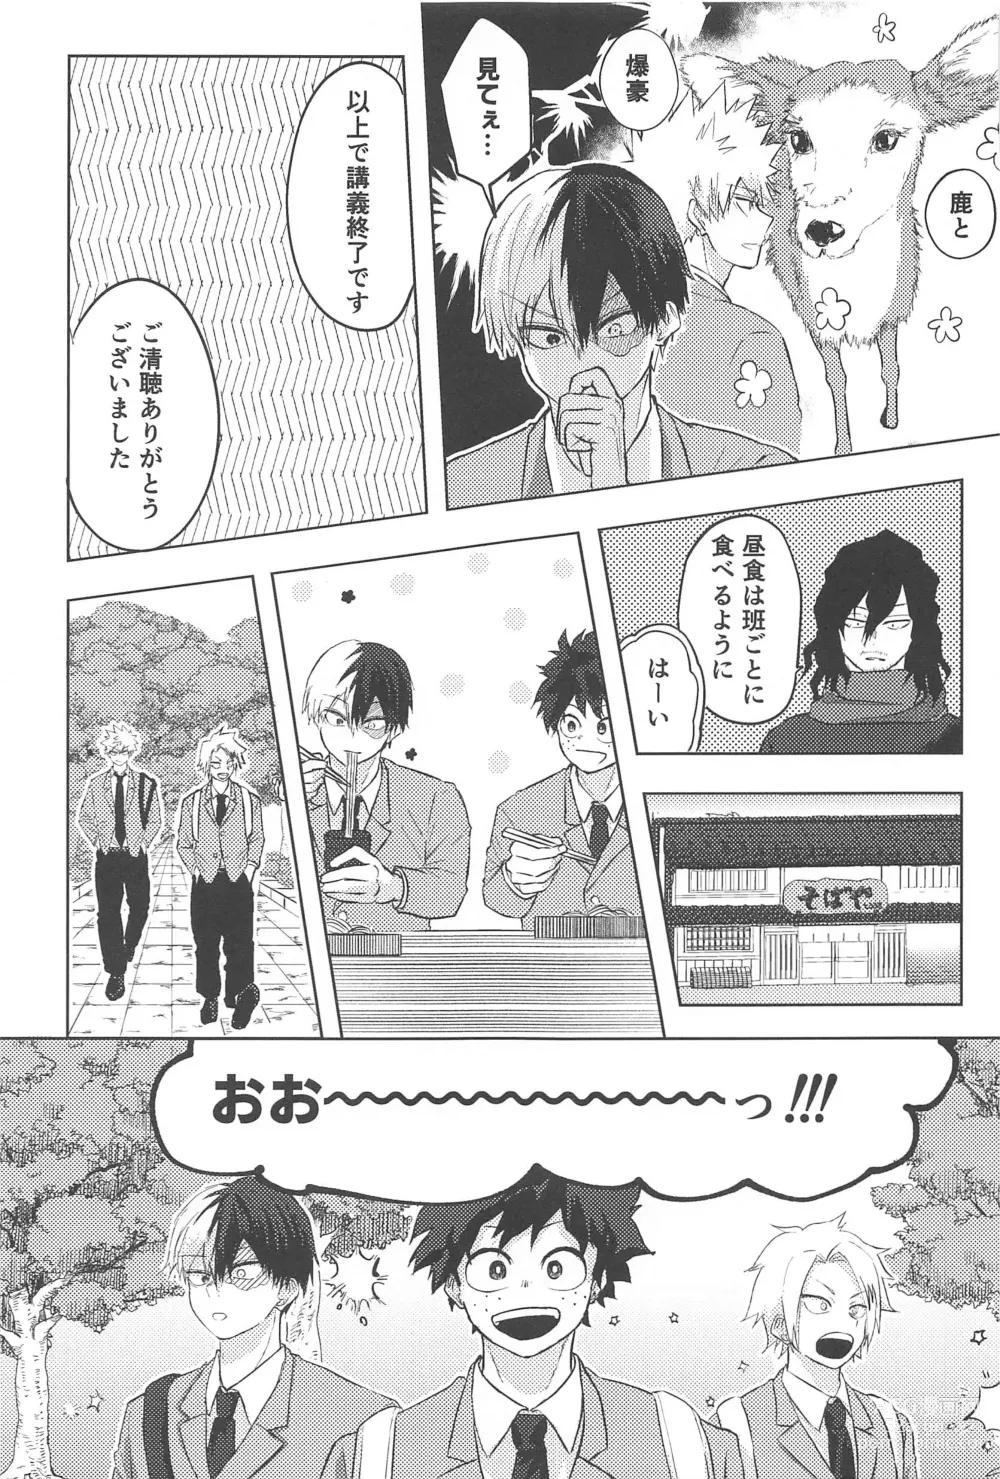 Page 14 of doujinshi Mitsuketa Koi ga Akaku Naru Toki